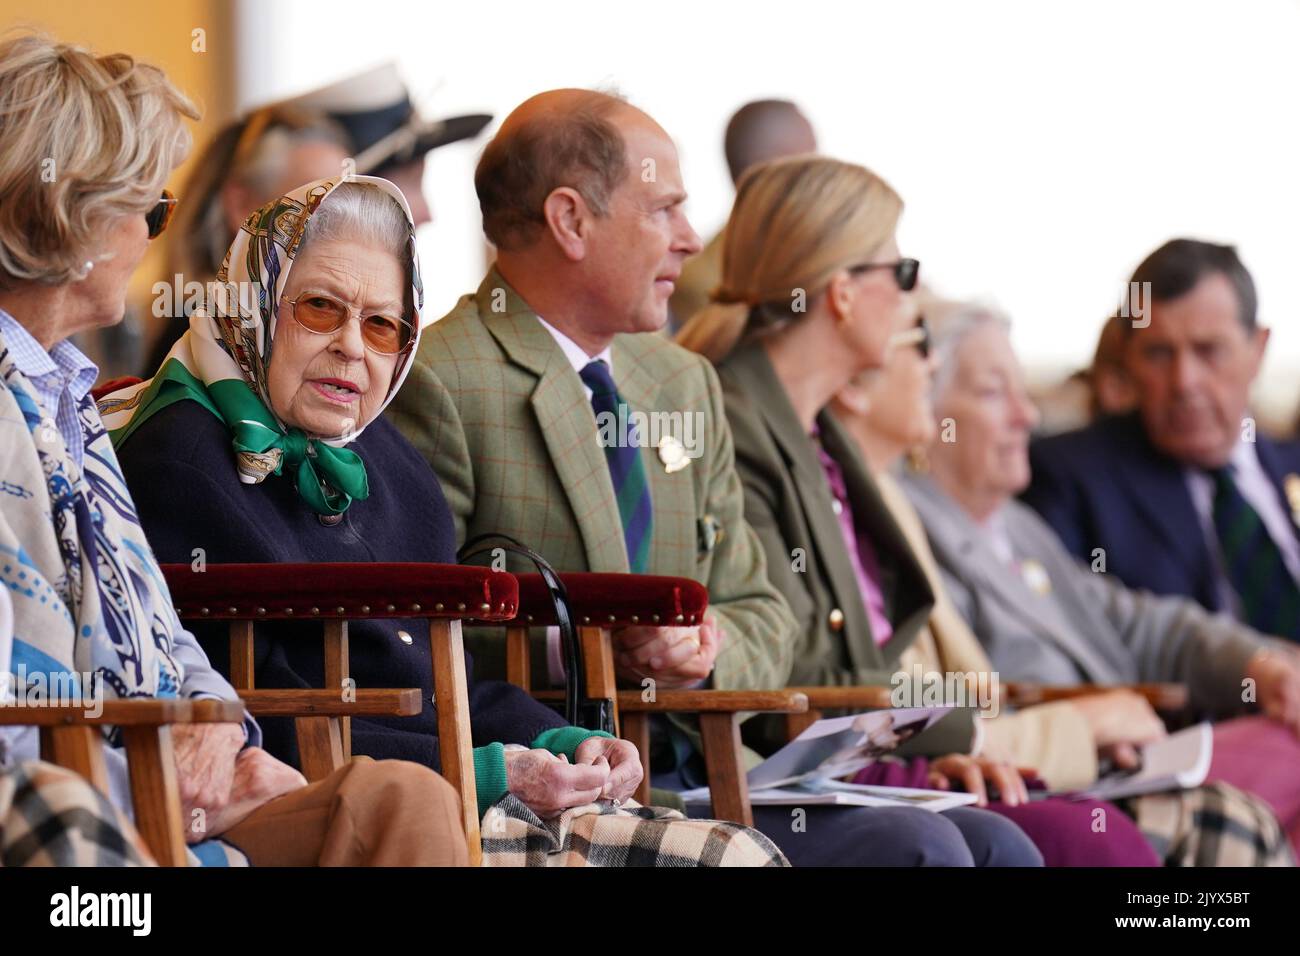 Foto de archivo fechada el 13/5/2022 de la Reina Isabel II con el conde y la condesa de Wessex en la caja real en el Royal Windsor Horse Show, Windsor. La reina murió pacíficamente en Balmoral esta tarde, ha anunciado el Palacio de Buckingham. Fecha de emisión: Jueves 8 de septiembre de 2022. Foto de stock